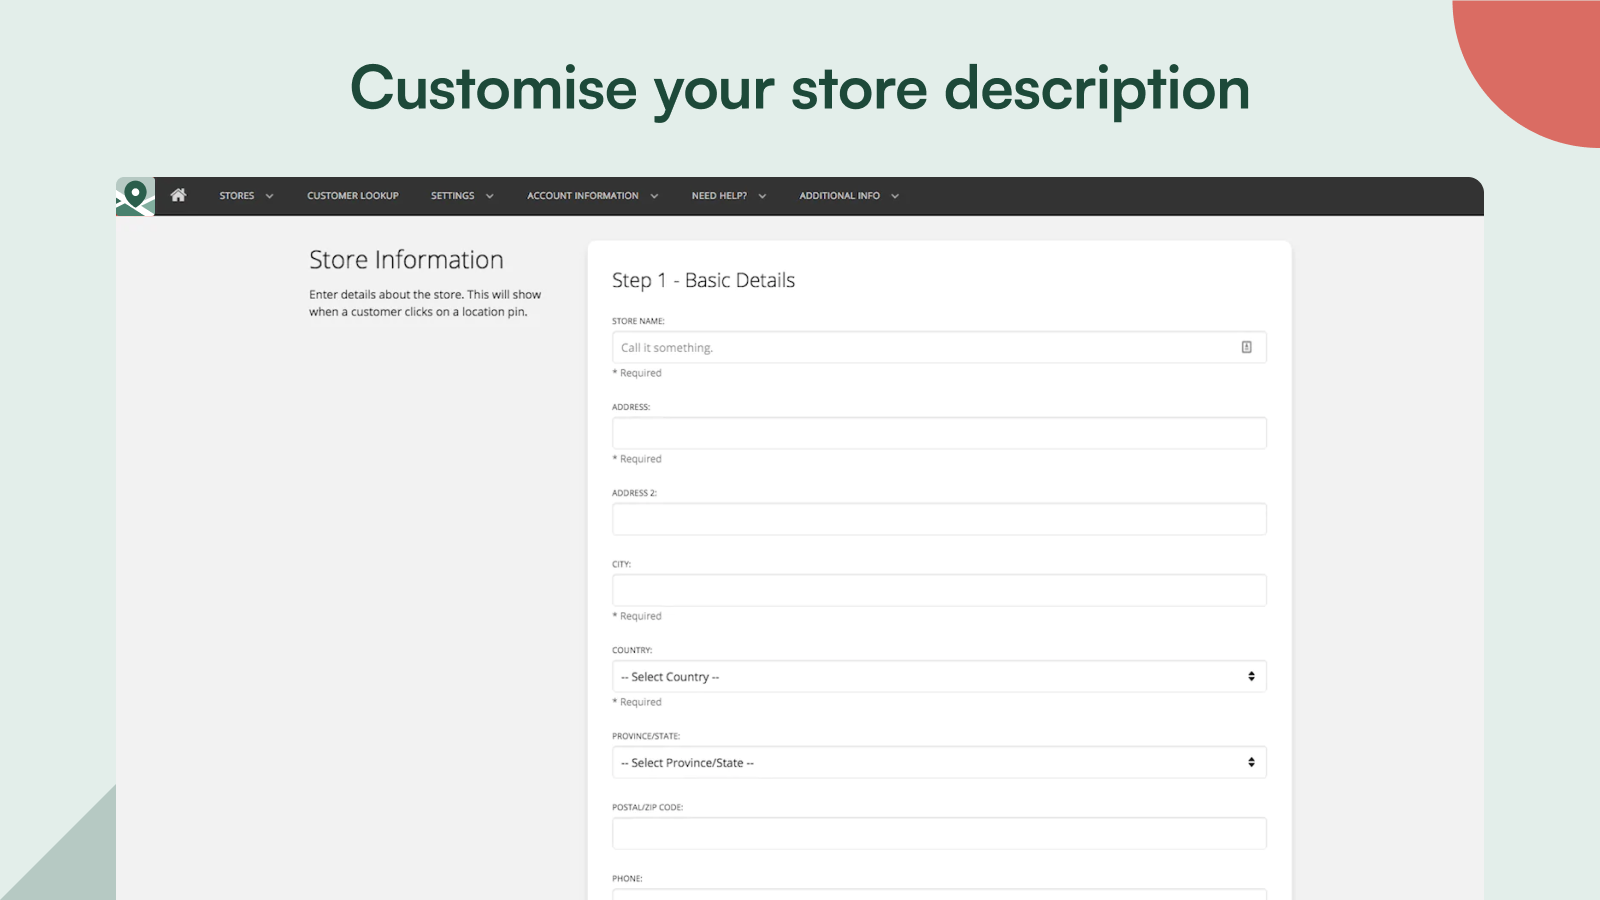 Customise your store description